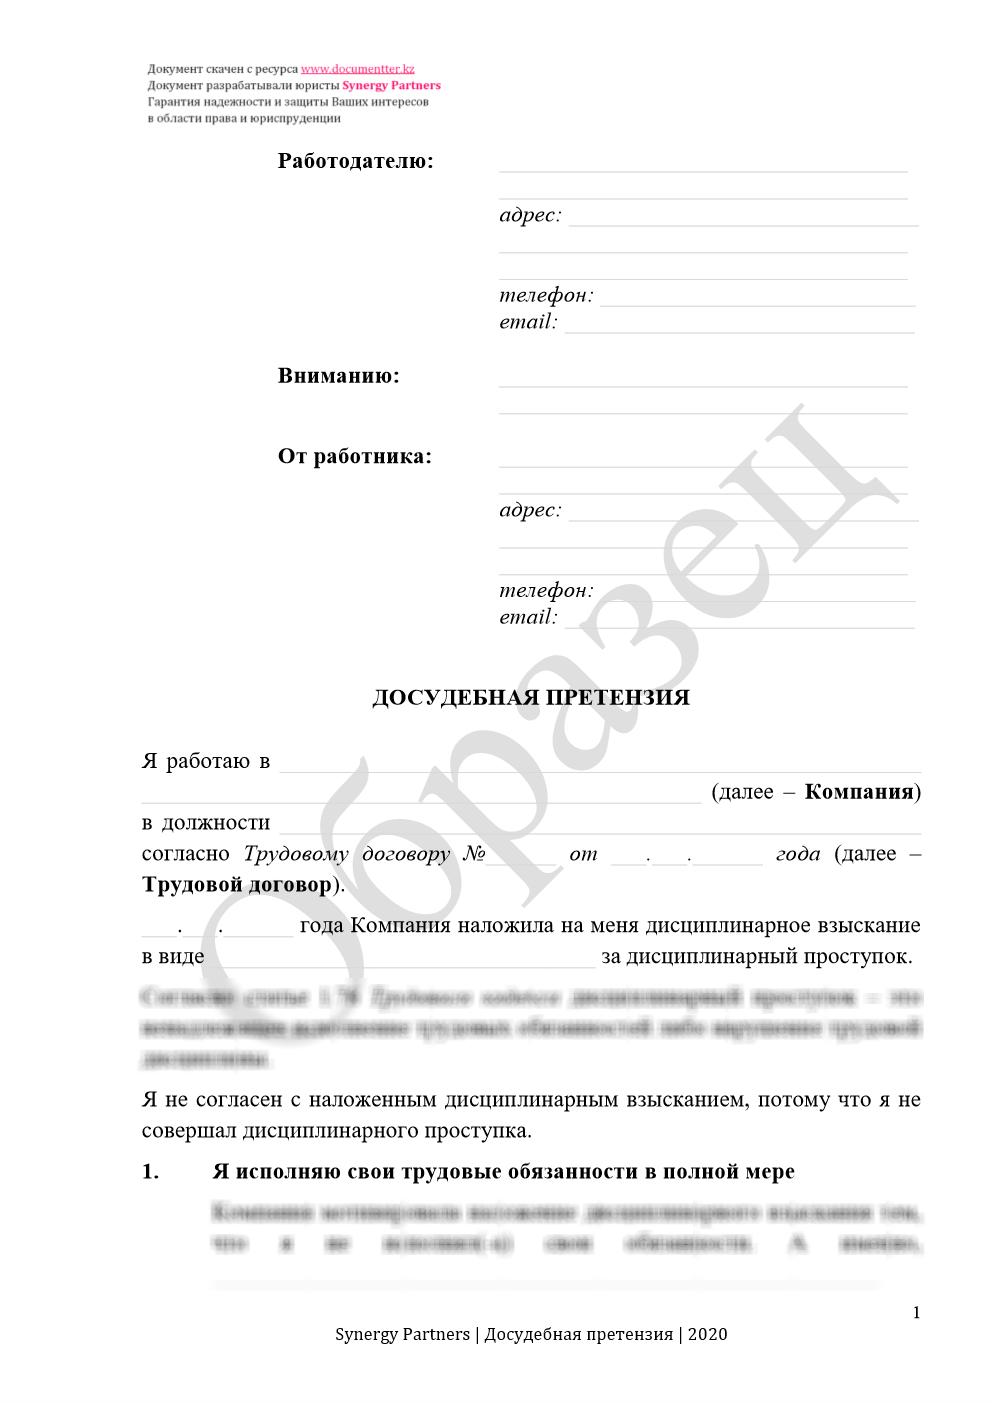 Досудебная претензия, если незаконно наложили дисциплинарное взыскание 18 | documentter.kz в Казахстане 